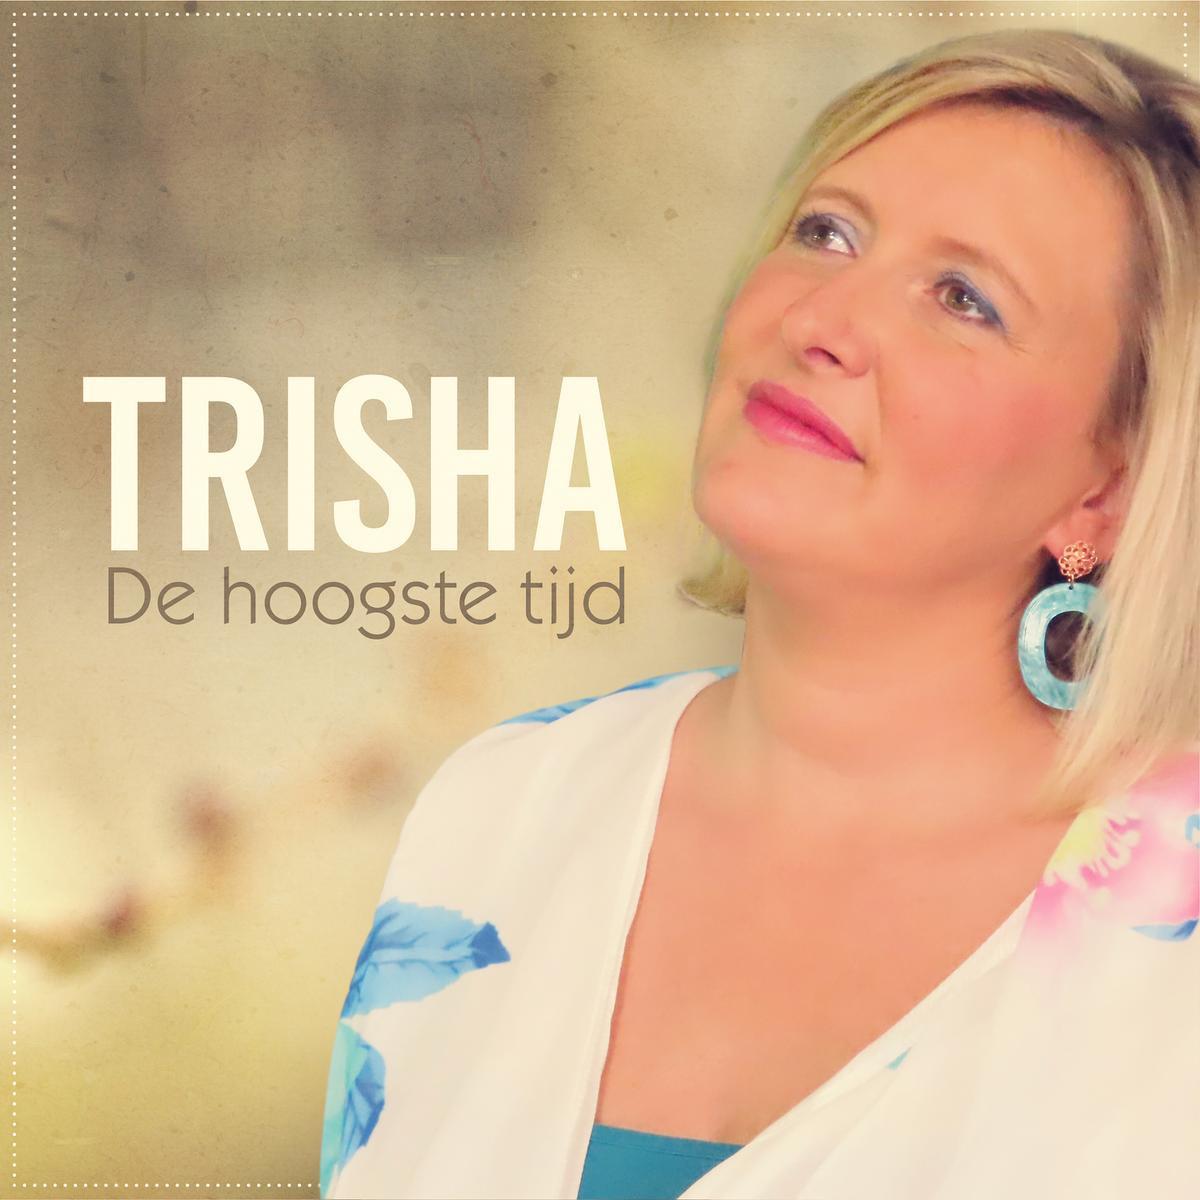 Trisha - nieuwe stijl - maakt een vuist tegen onrecht en kwaad in 'De hoogste tijd'